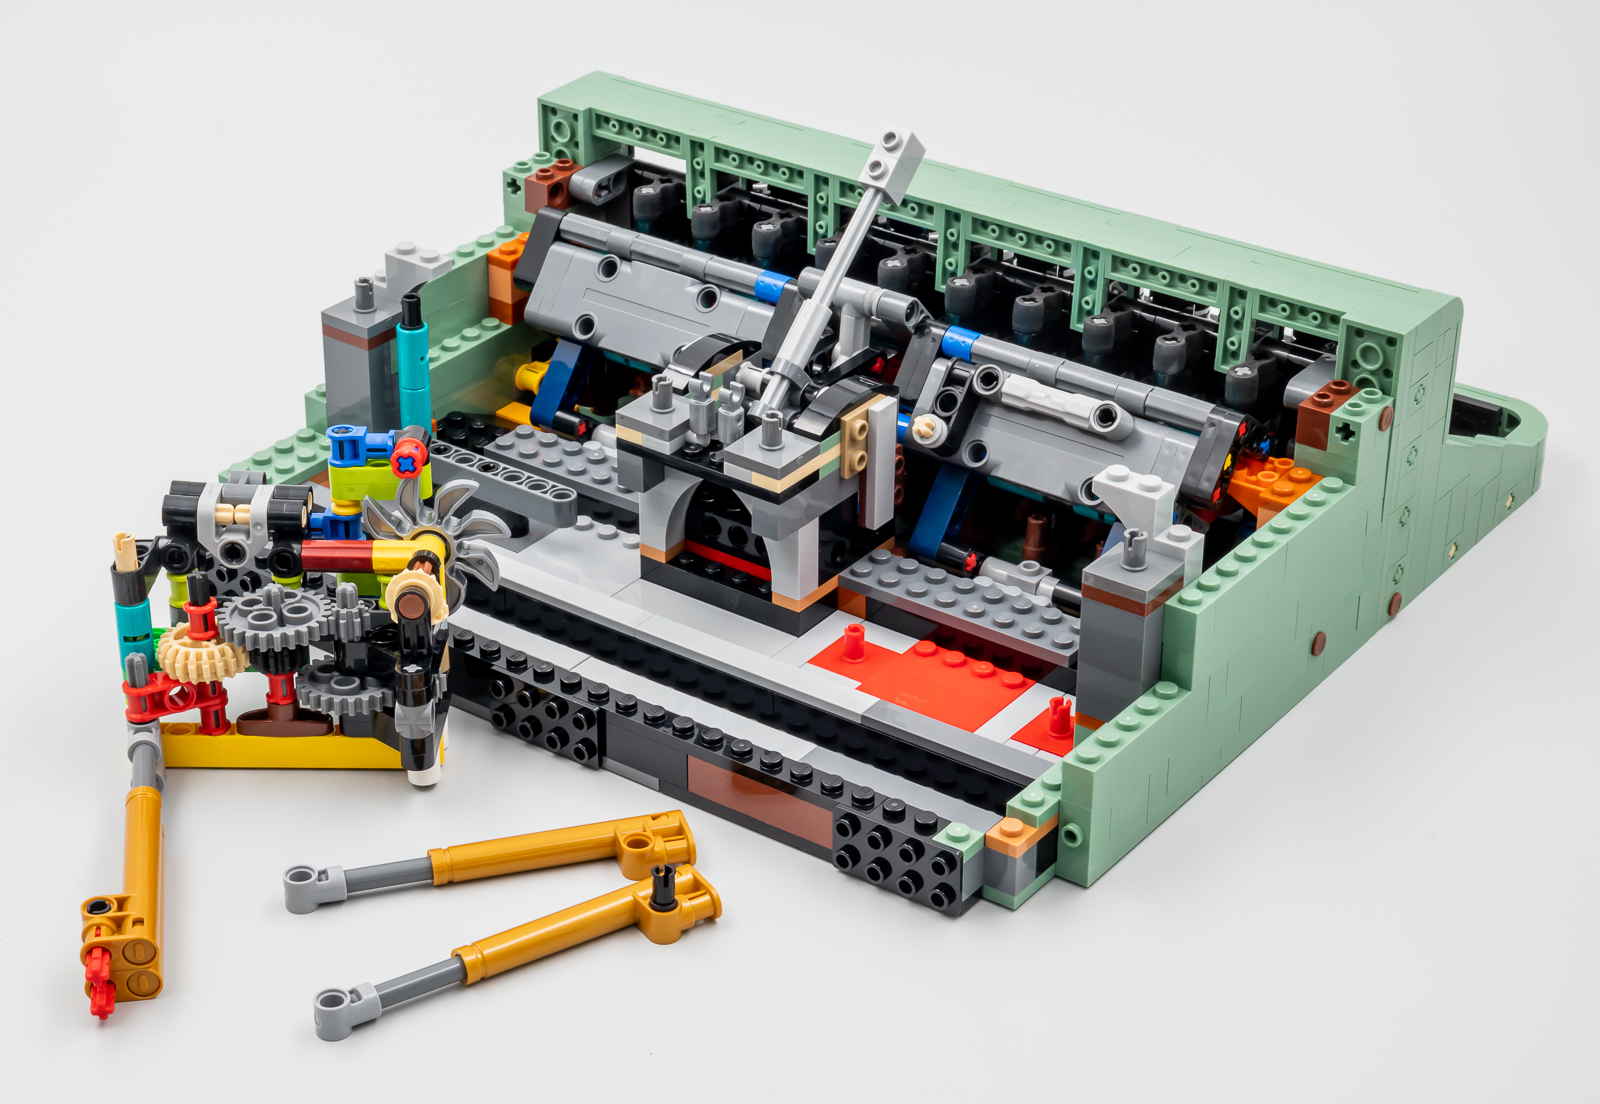 La macchina da scrivere LEGO è spettacolare ed è stata ideata da un fan! Le  immagini